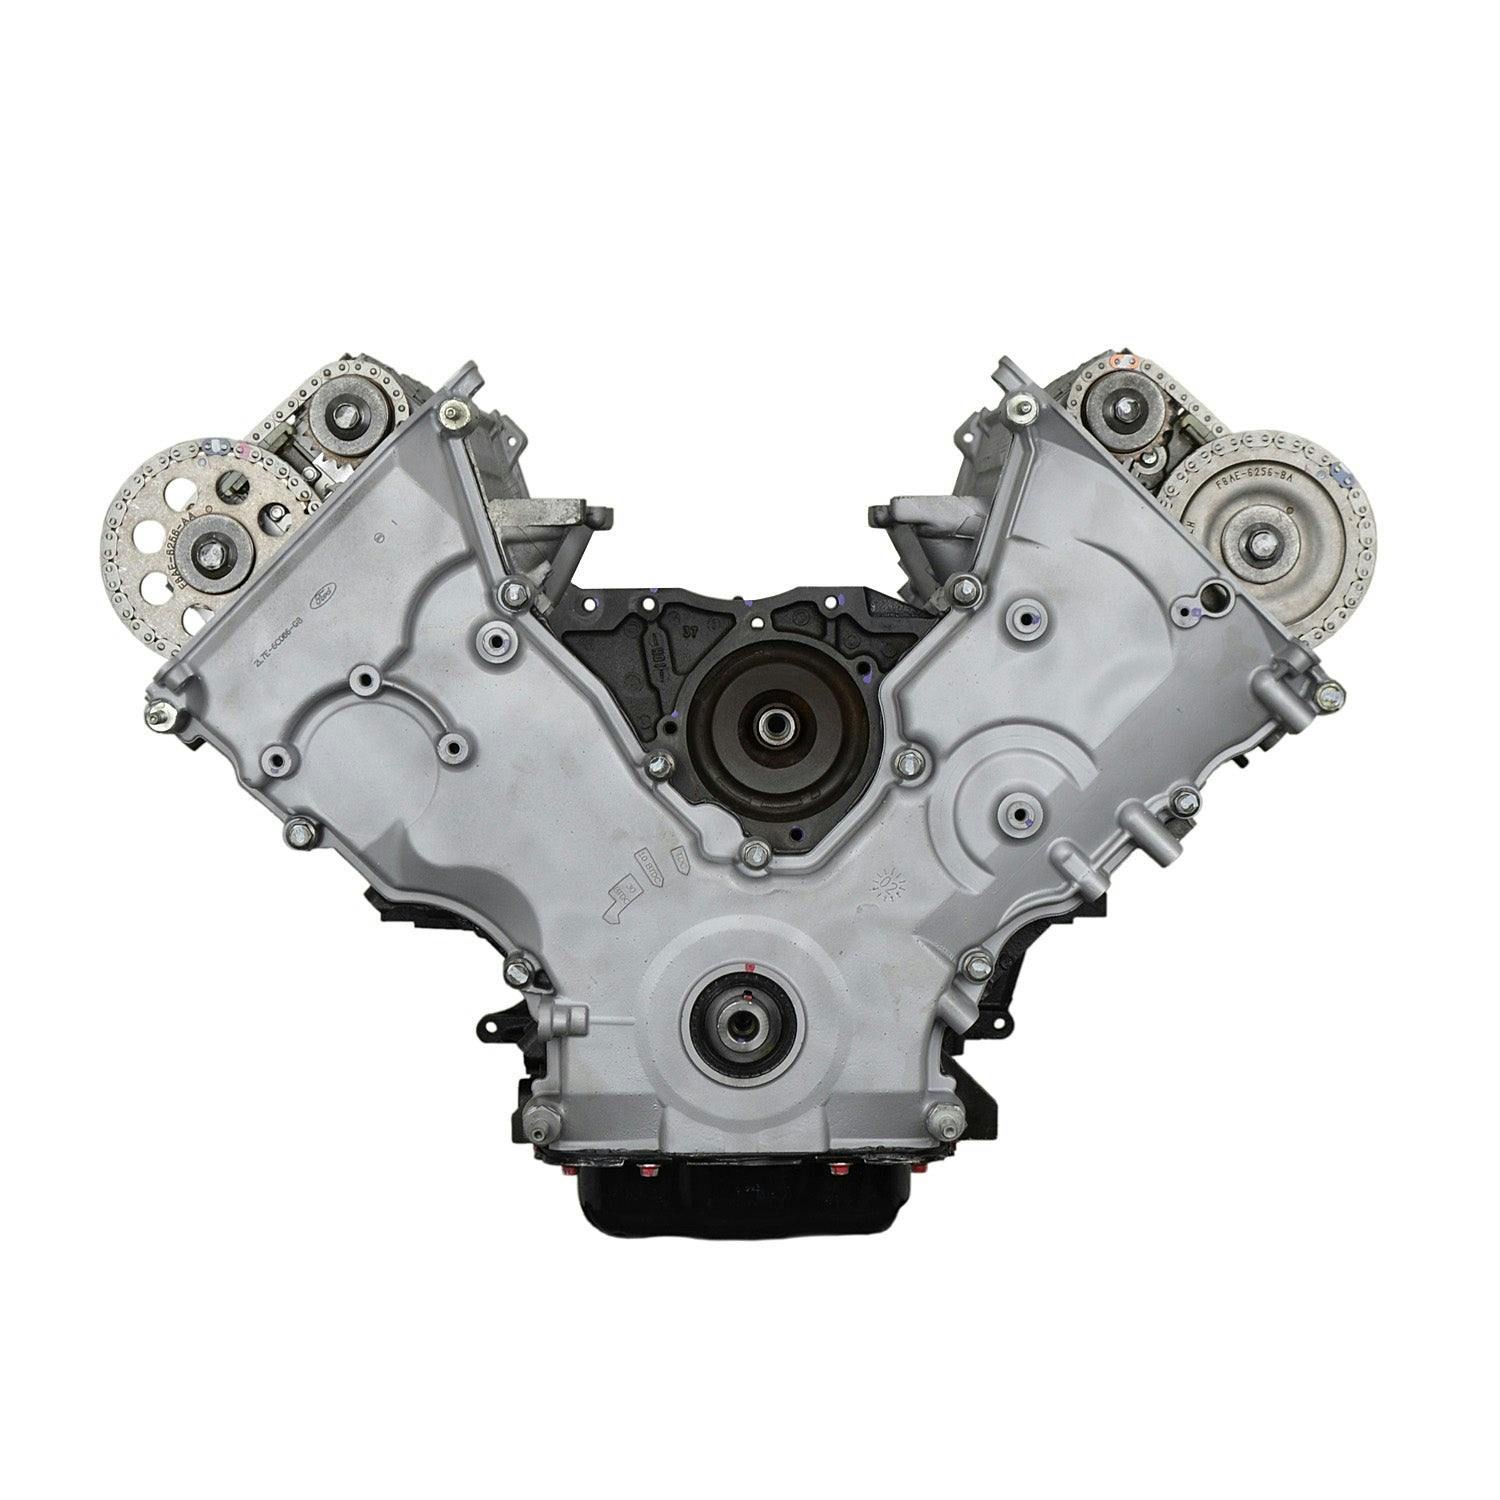 5.4L V8 Engine for 2002-2004 Lincoln Blackwood/Navigator